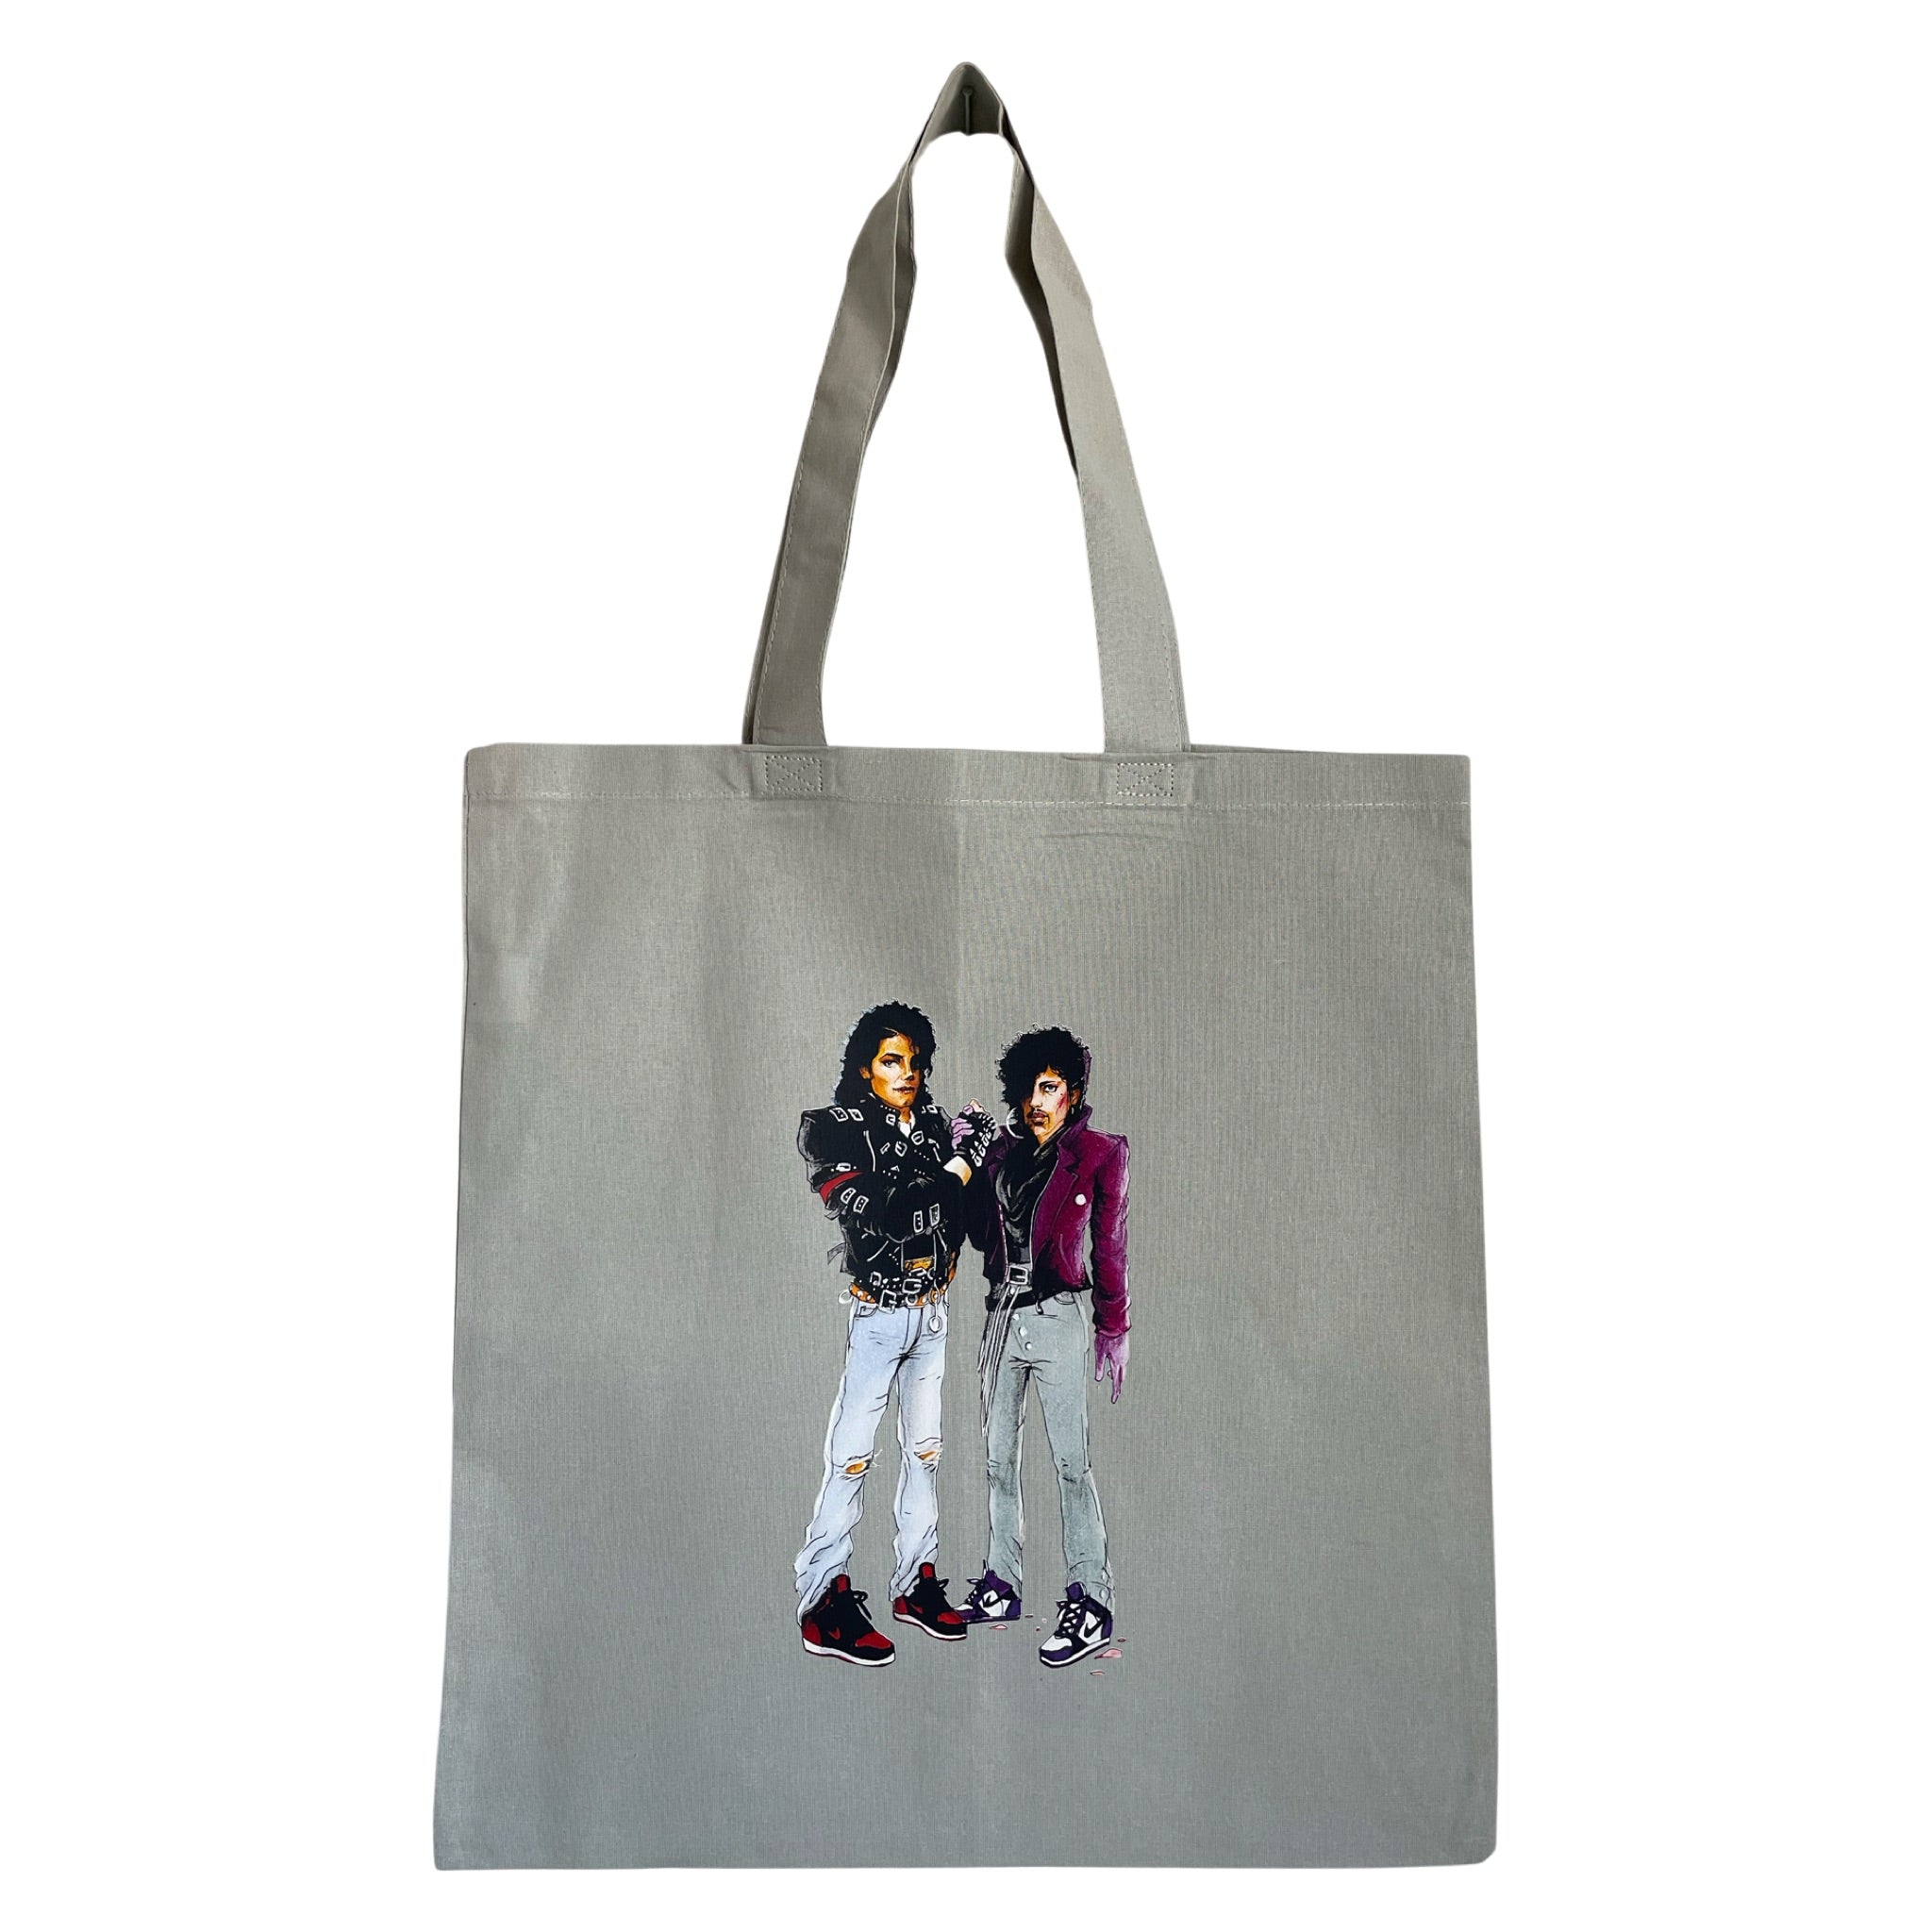 Prince & Michael Tote Bag